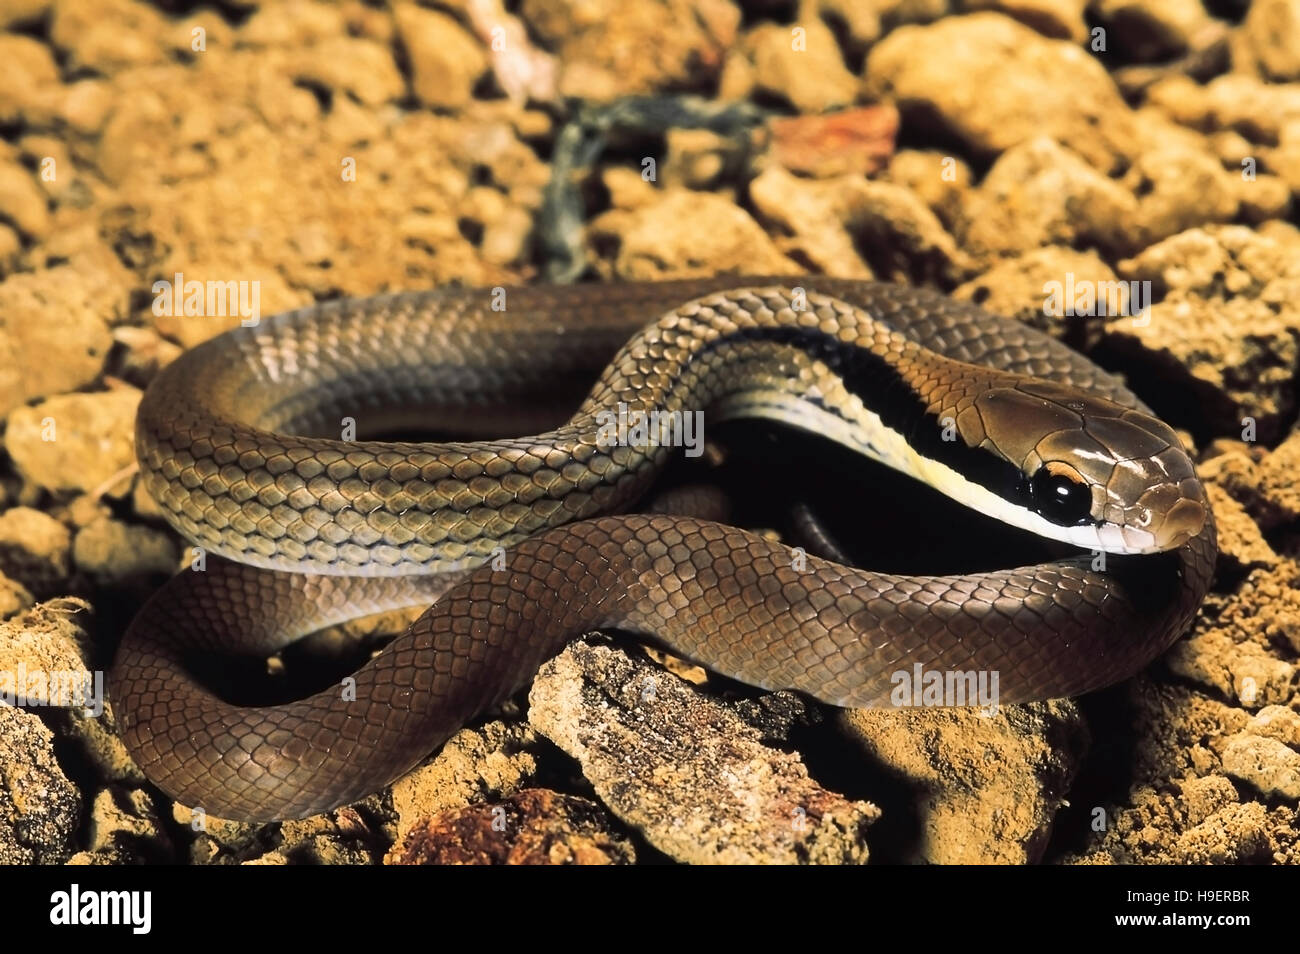 Liopeltis Frenatus. Stripenecked snake. Non venomous. Arunachal Pradesh, India. Stock Photo